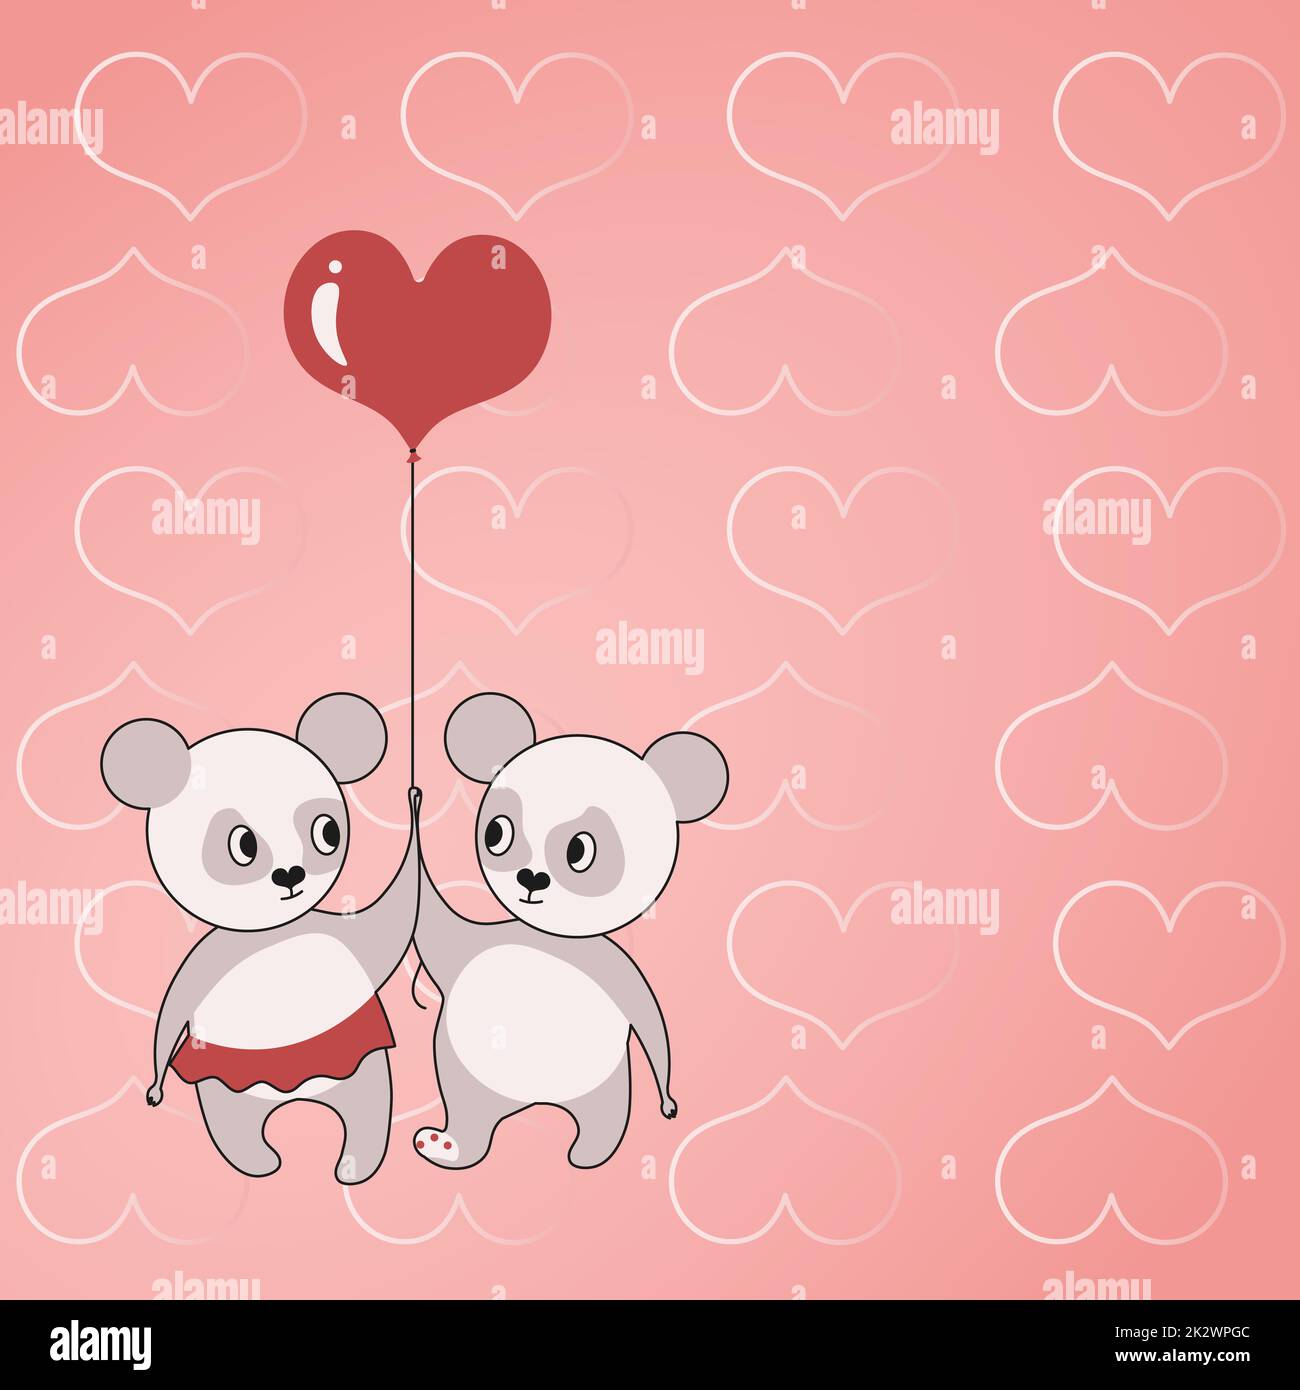 Deux ours tenant un ballon en forme de coeur avec des coeurs en arrière-plan montrent l'amour et l'harmonie. L'ours en peluche représente un couple passionné avec des objectifs d'amour. Banque D'Images